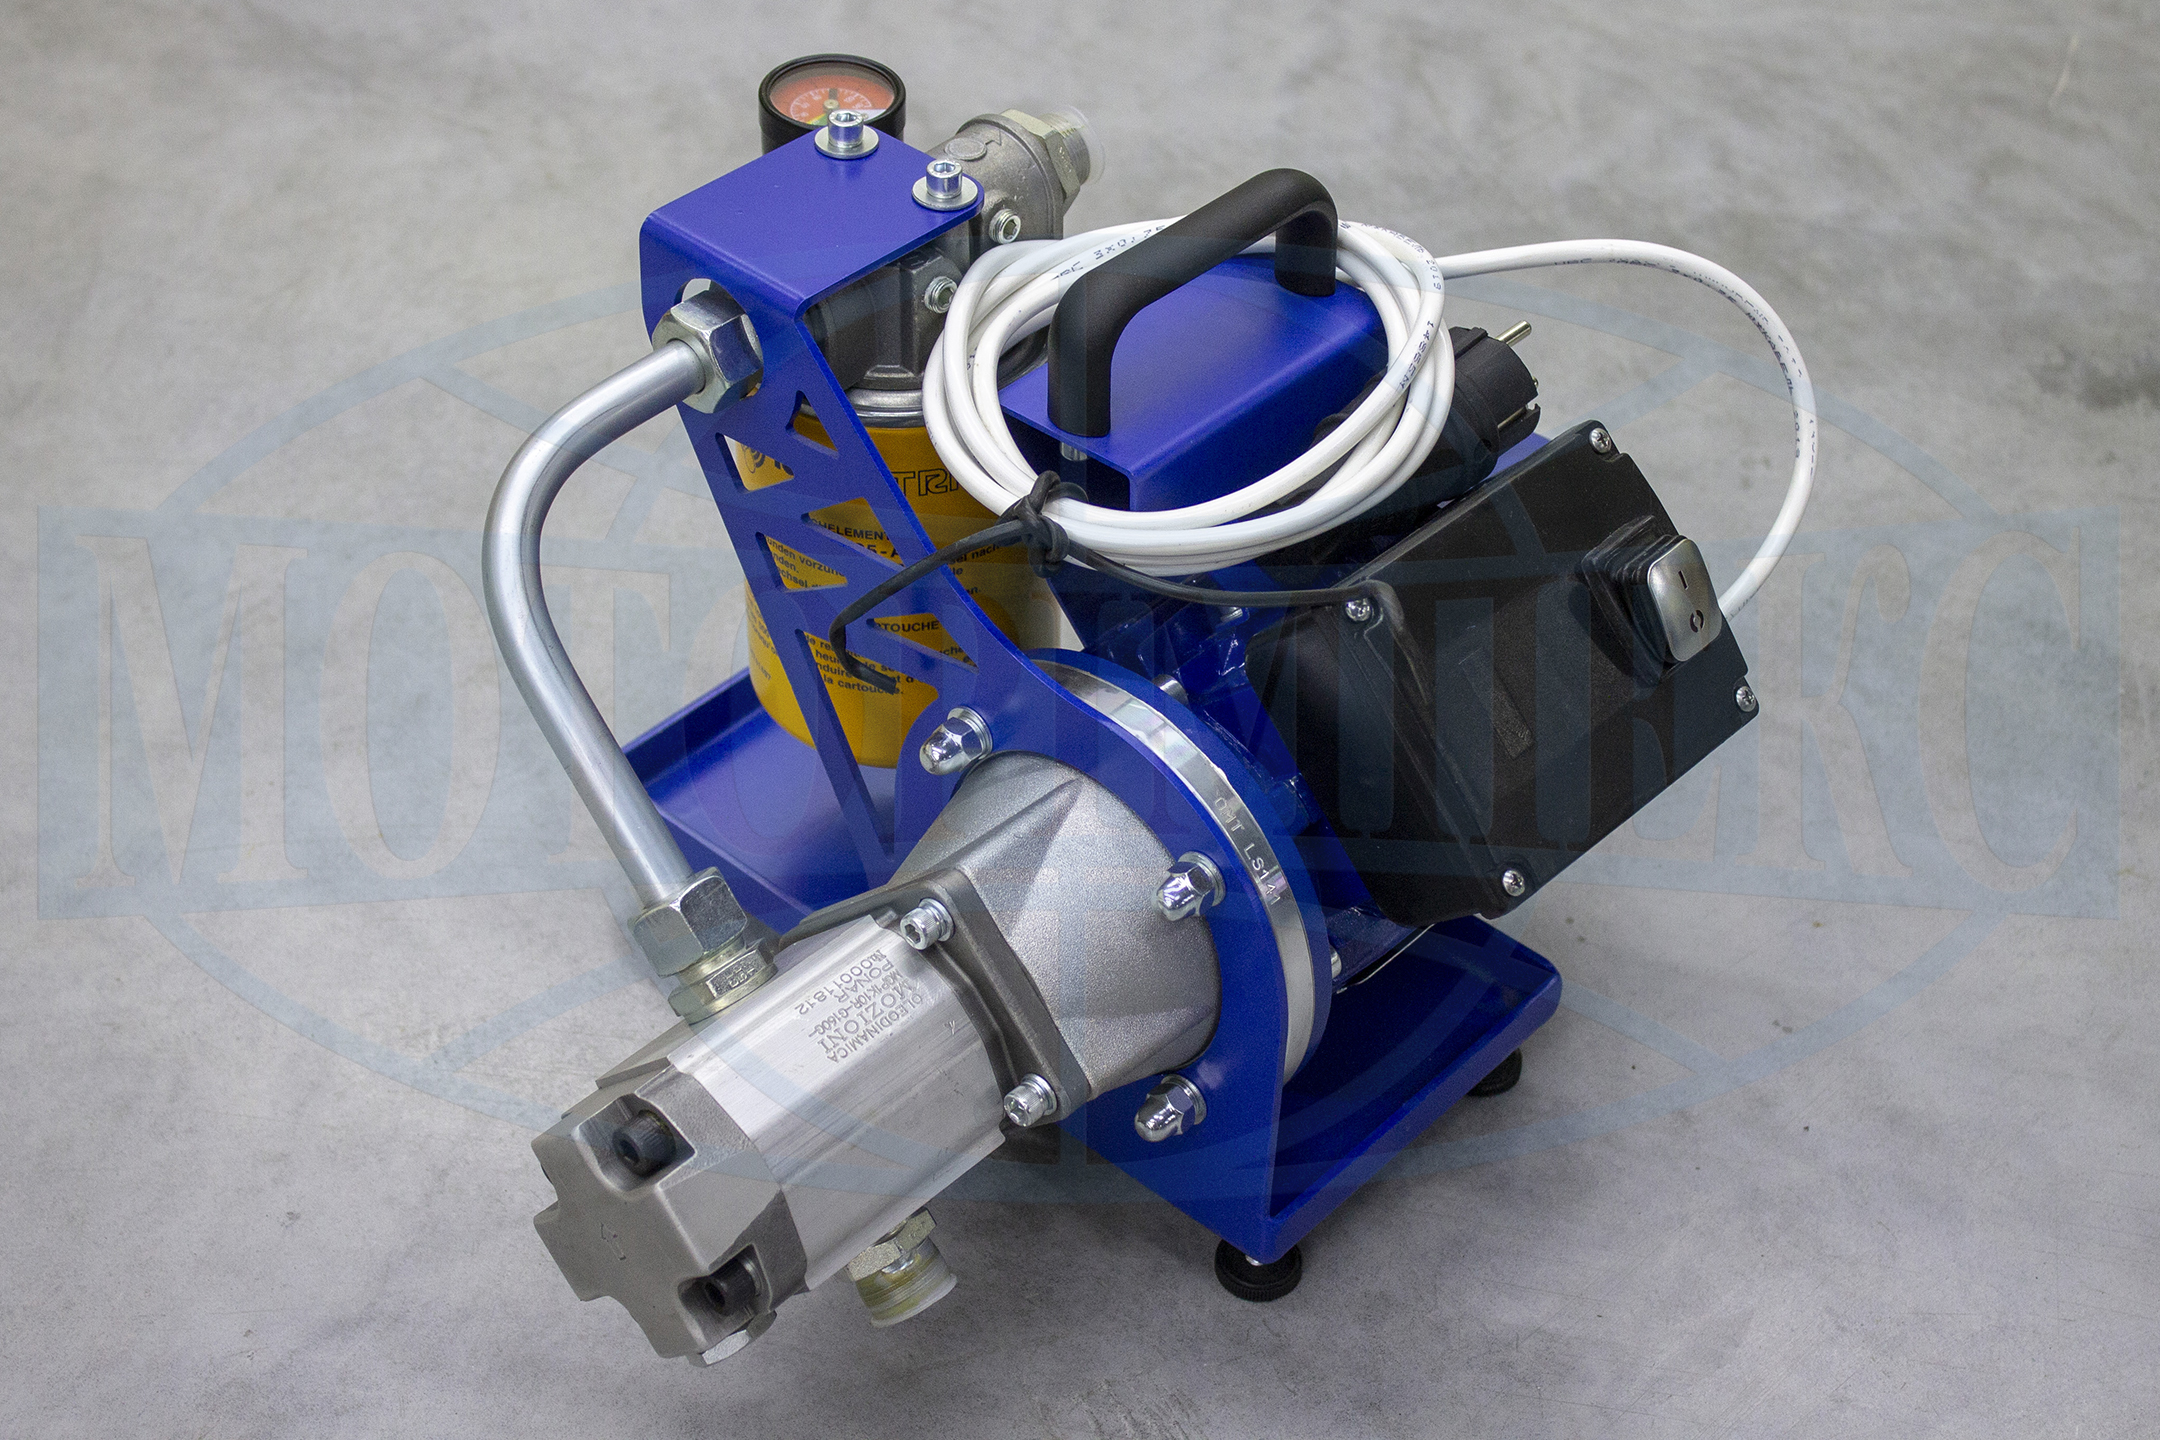 Мини-ФЗУ — работает в системах с объемом рабочей жидкости до 200 литров